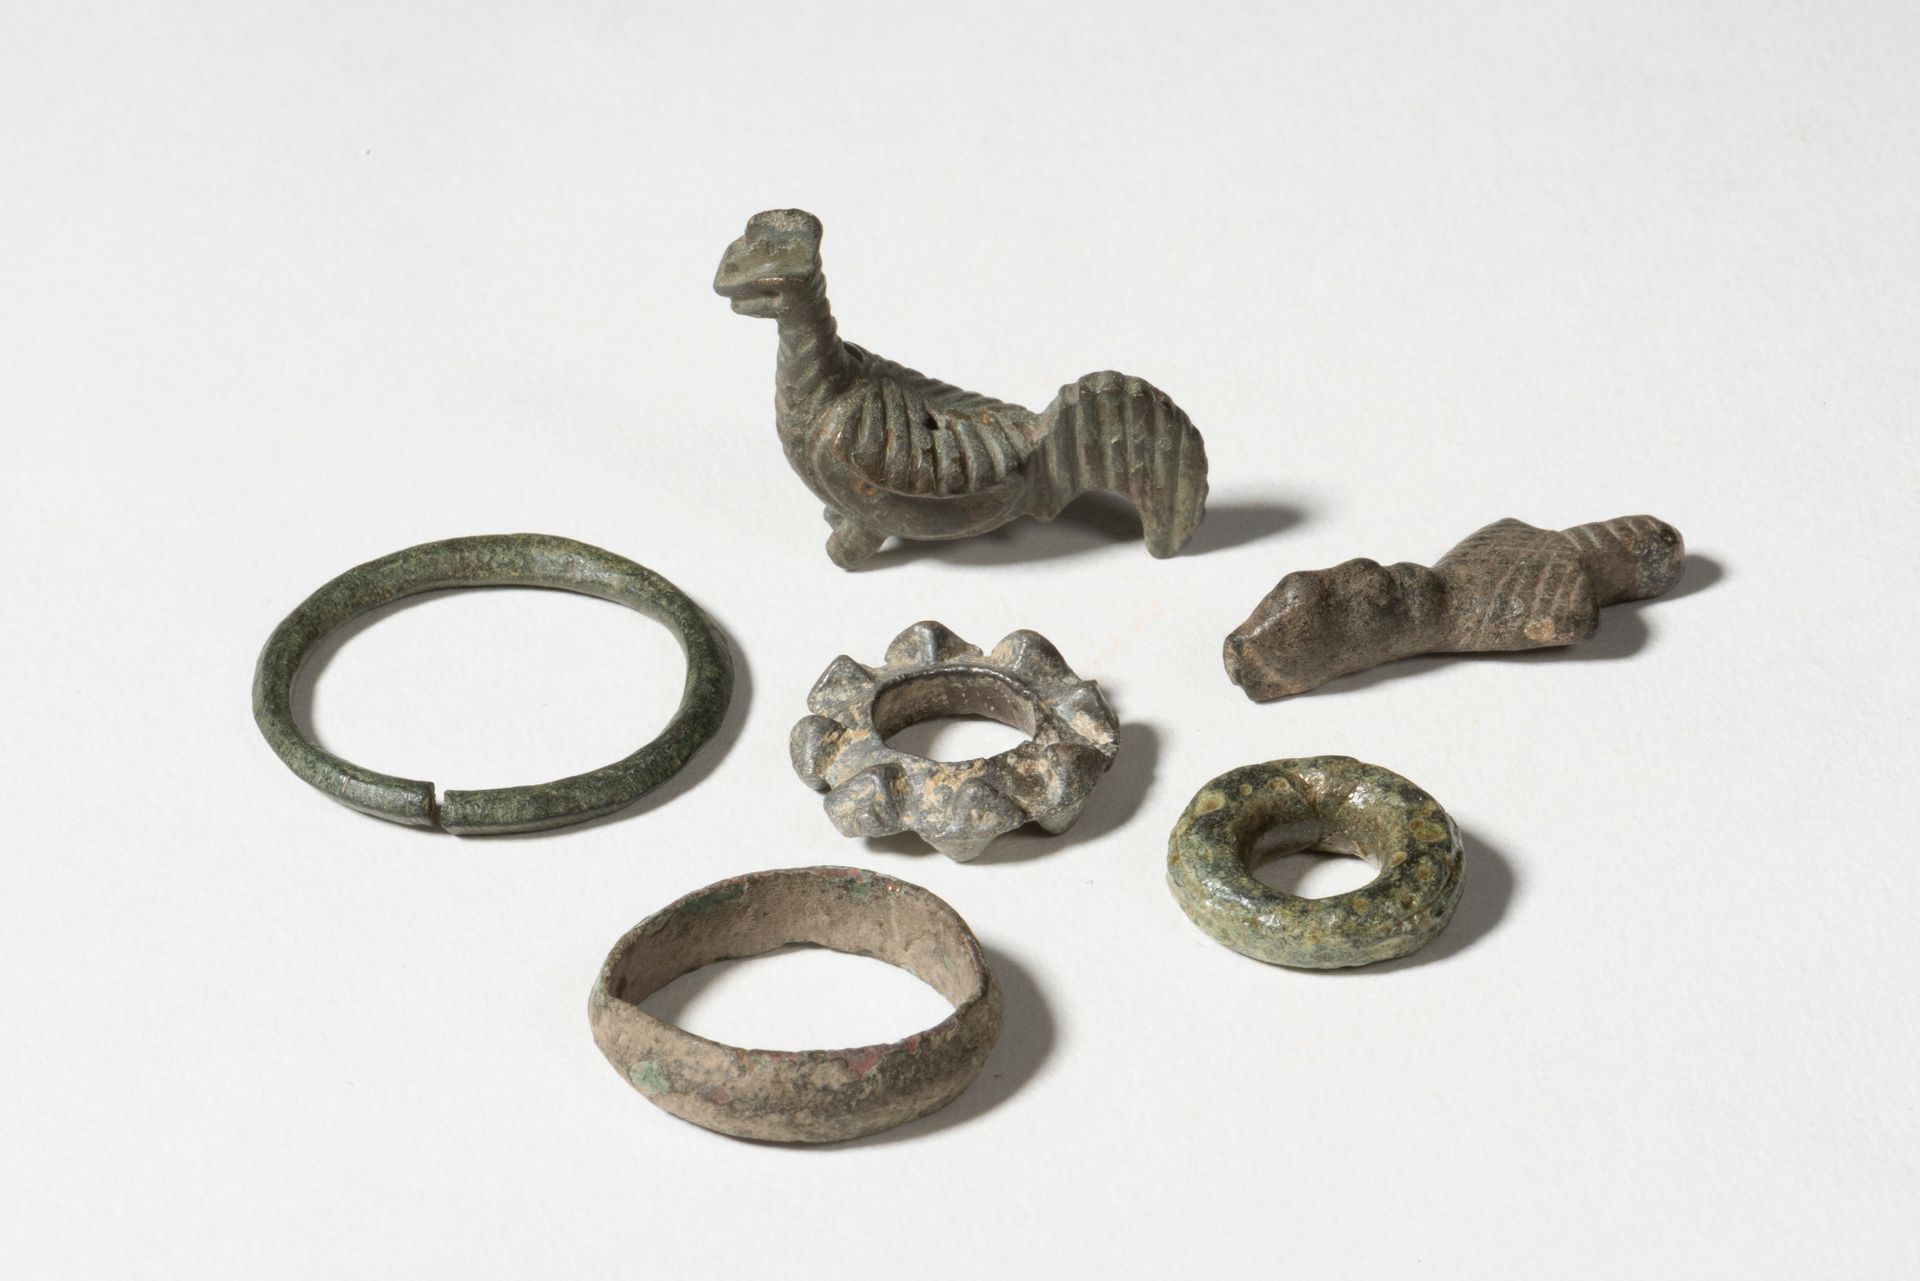 LOT 加洛-罗马时期

拍品包括一个阳具护身符，四个前货币轮和一个公鸡模型



青铜器